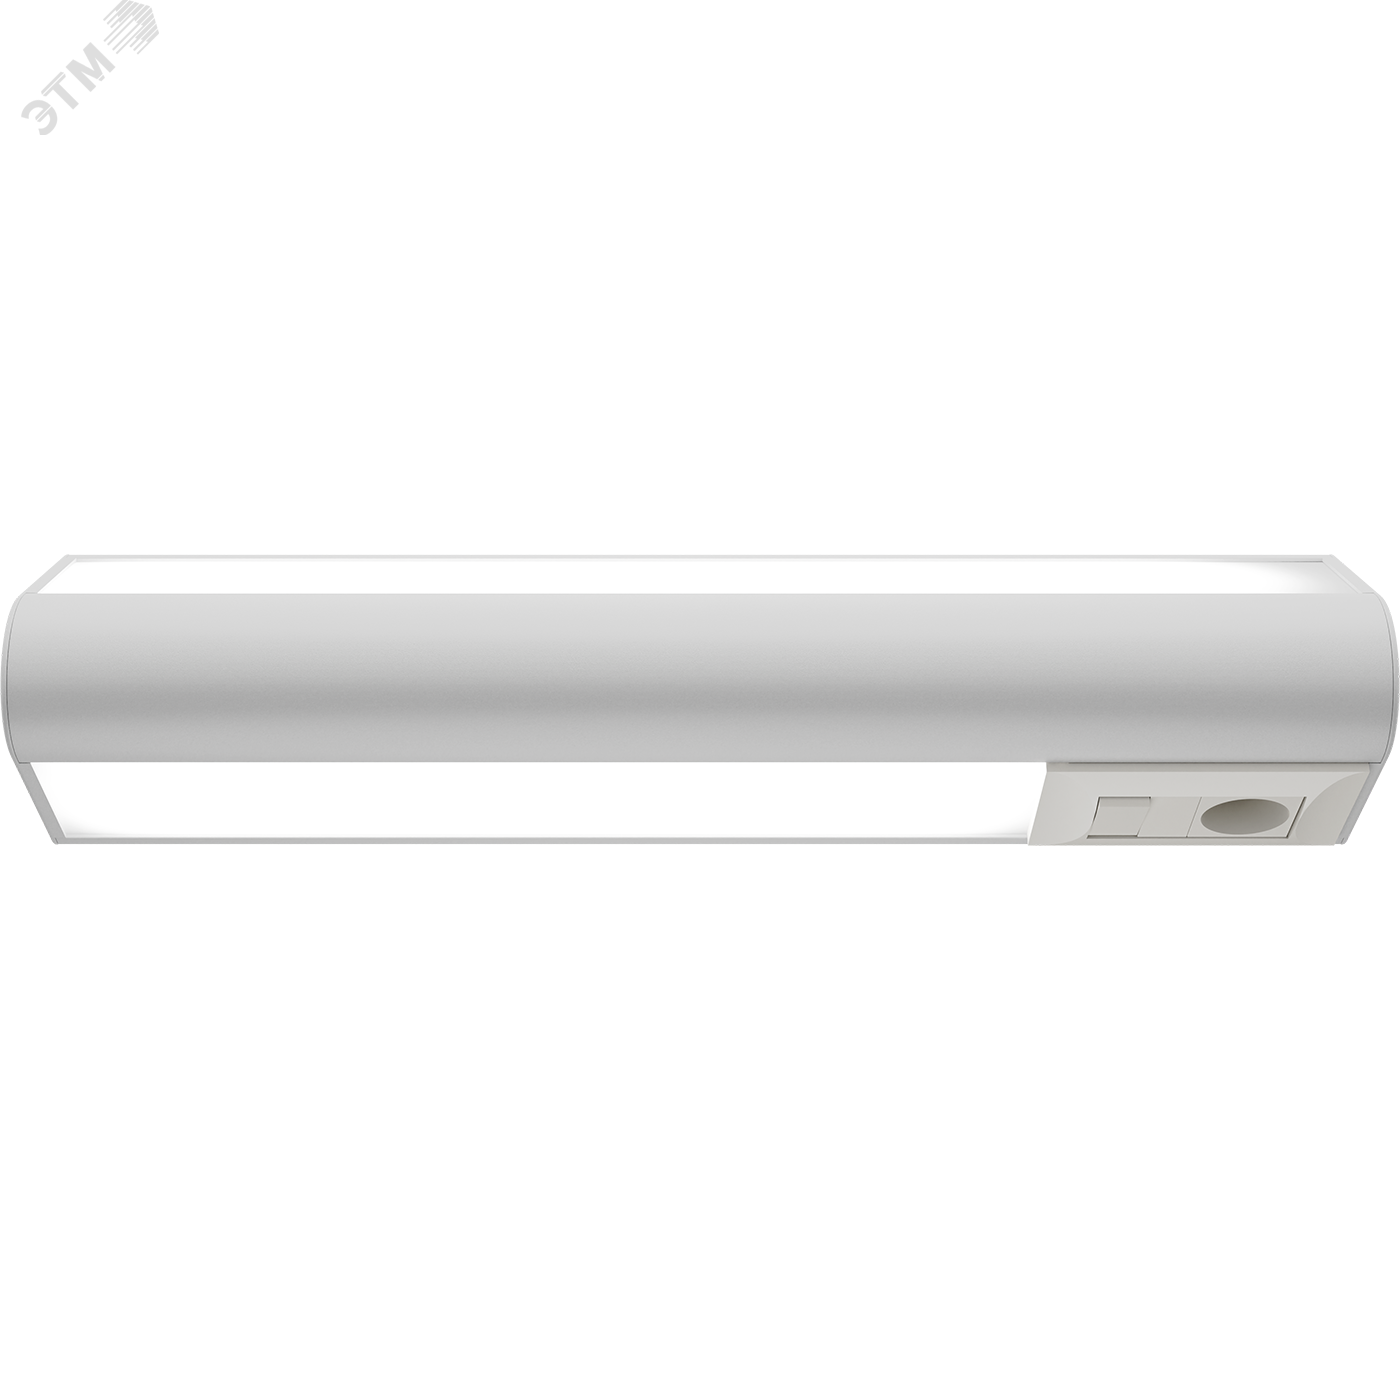 Светильник BH 2х36 прикроватный рoзетка/выключатель левосторонний 1391000020 Световые Технологии - превью 3